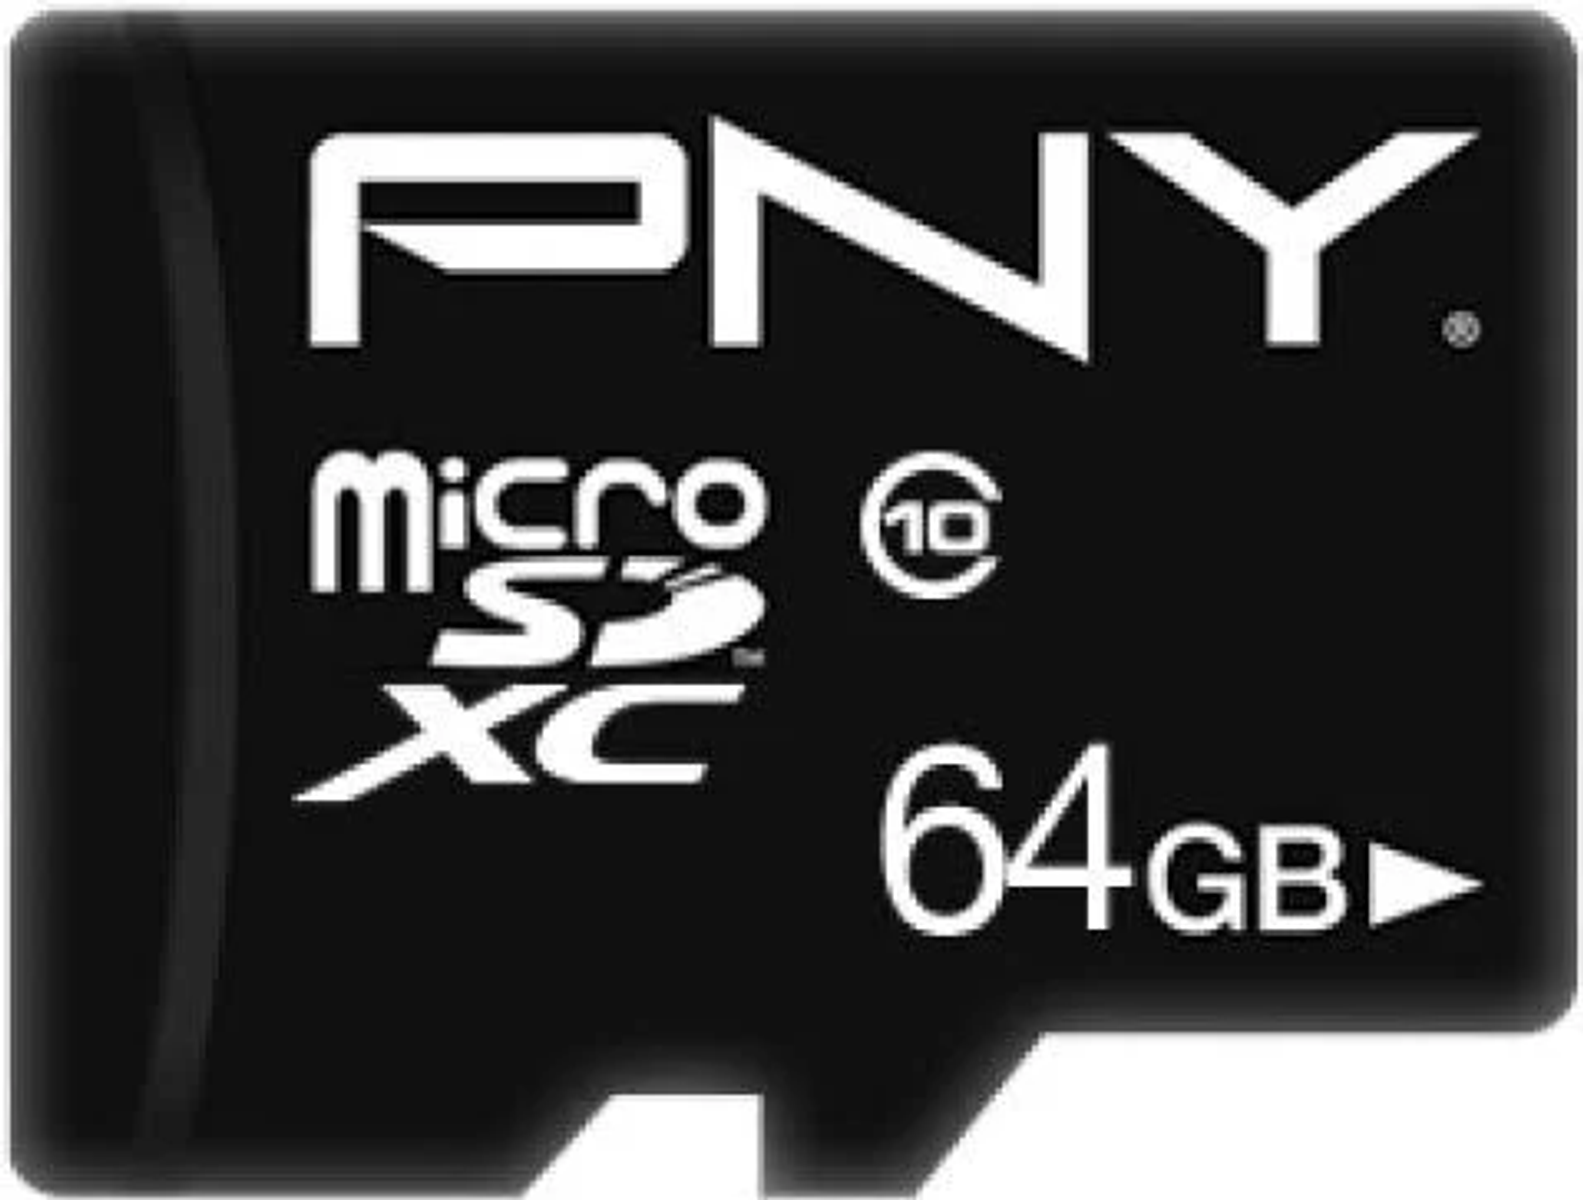 m0000CTU34, Speicherkarte, Micro-SD 64 GB PNY